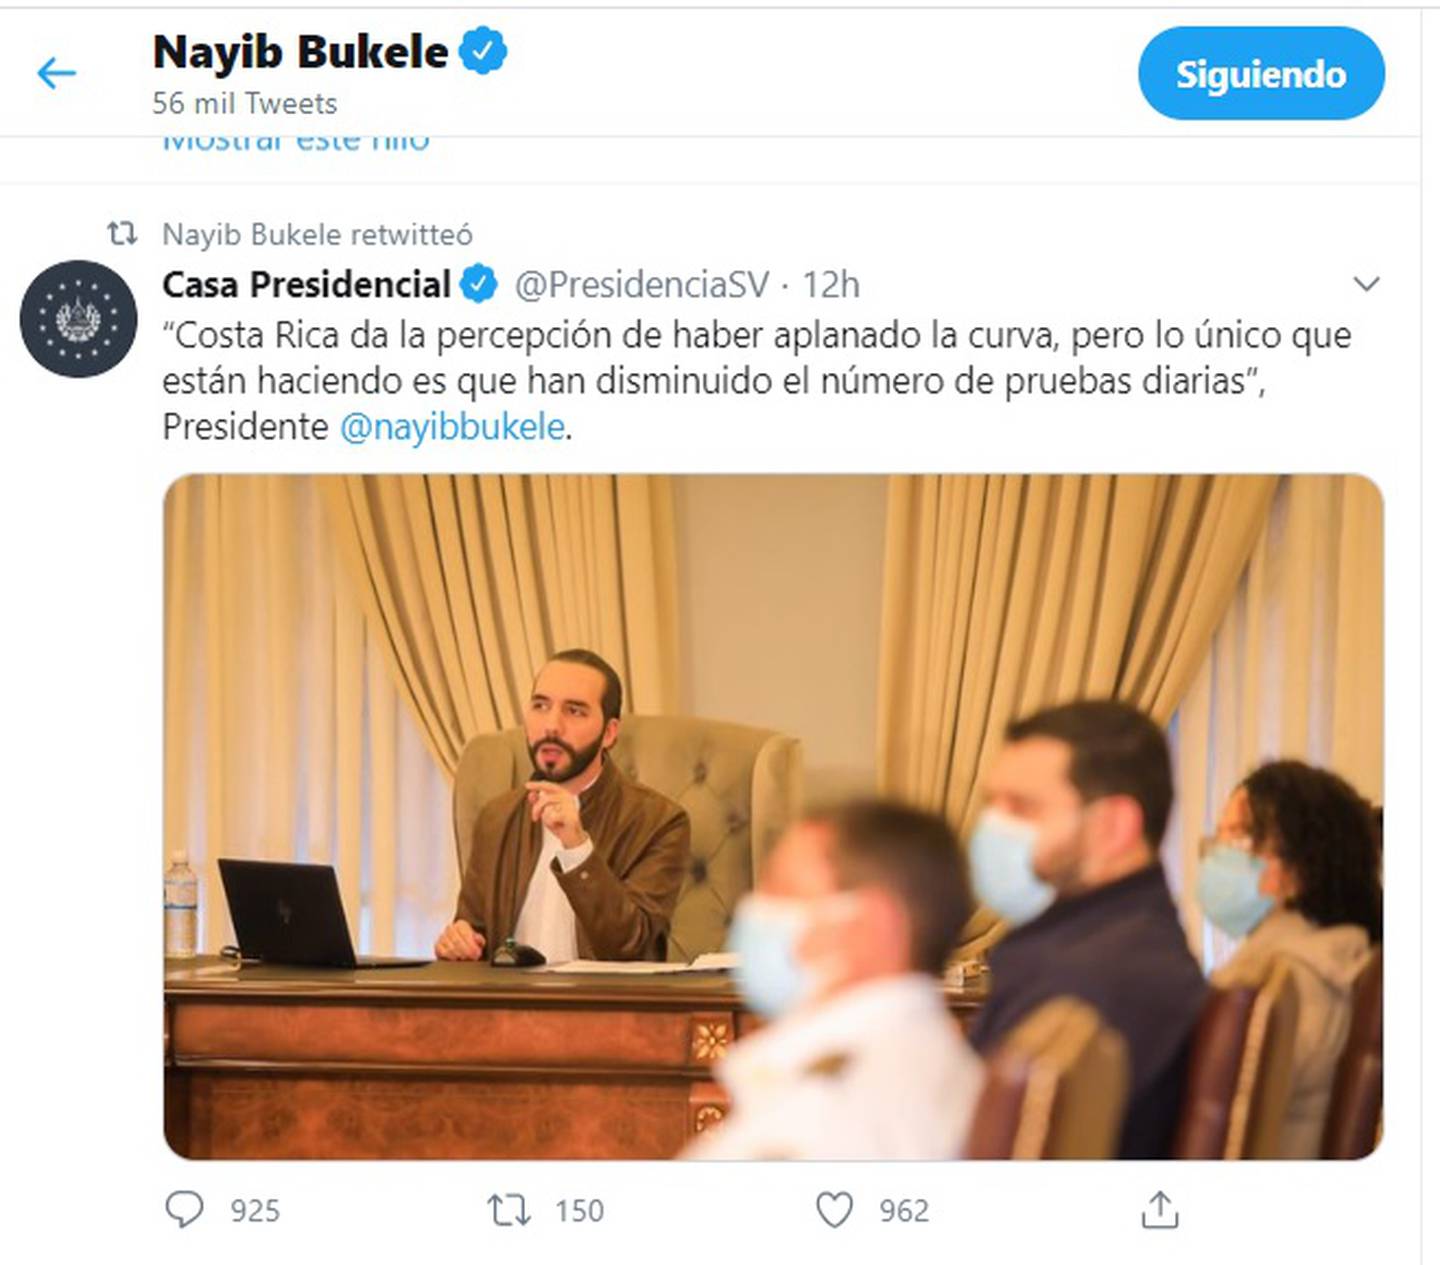 El presidente de El Salvador, que no estudió nada, le tira a Costa Rica por el Covid-19. El diputado Carlos Ricardo Benavides le responde.